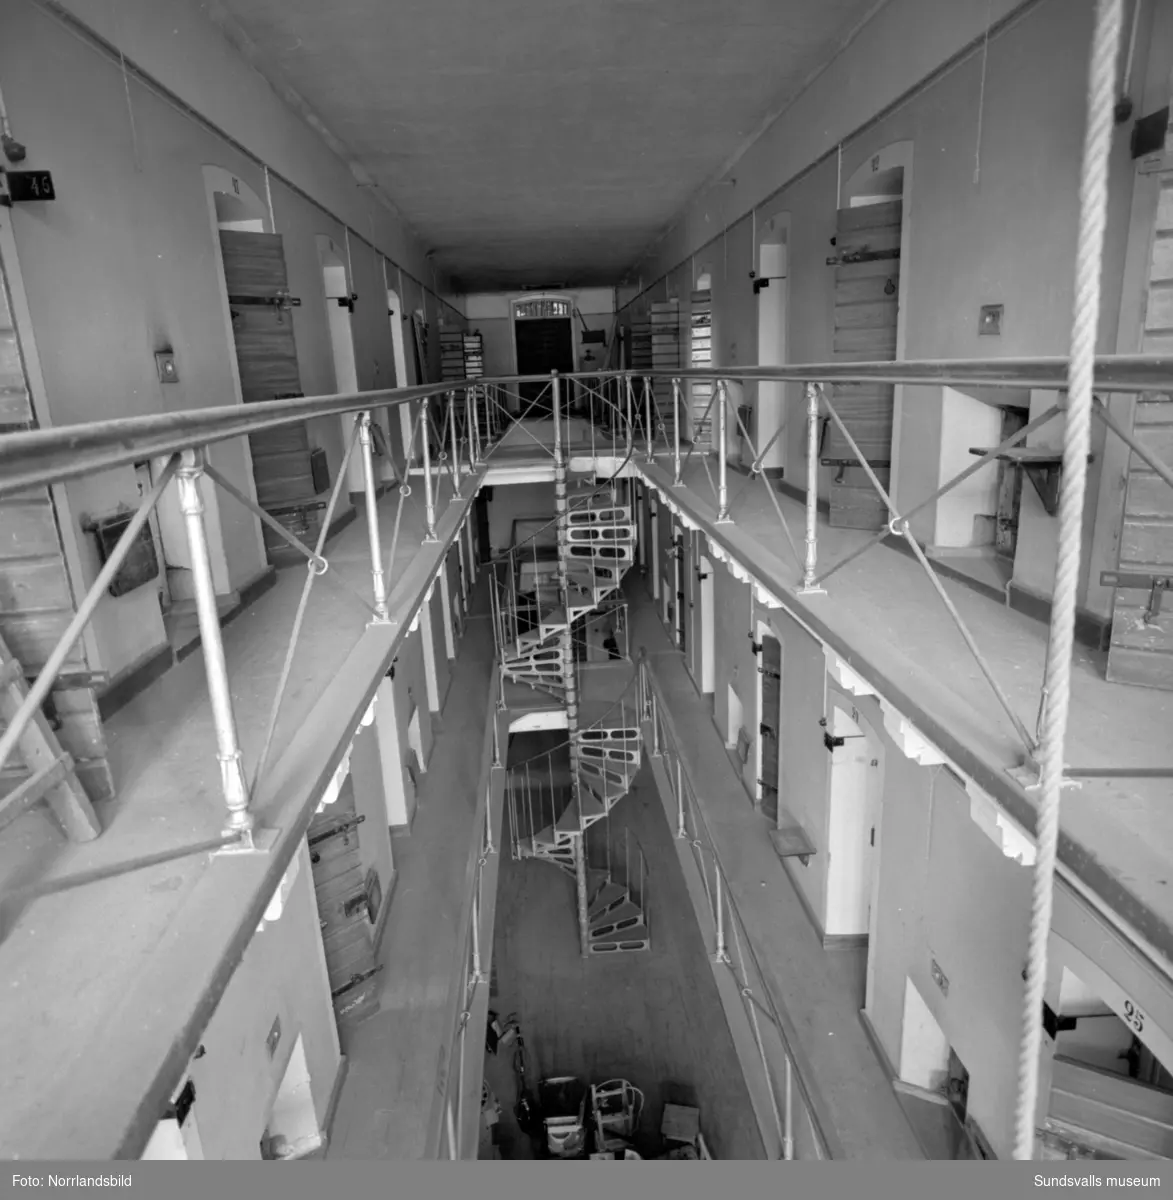 Kronohäktet i Sundsvall inrymde ett 50-tal celler fördelade på tre våningar med järntrappor emellan och klassiska avsatser utanför celldörrarna. Fängelset som byggdes 1879 var i bruk fram till 1946 och revs sedan 1959 för att ge plats för bygget av Åkersviks skola. Interiörbilder.